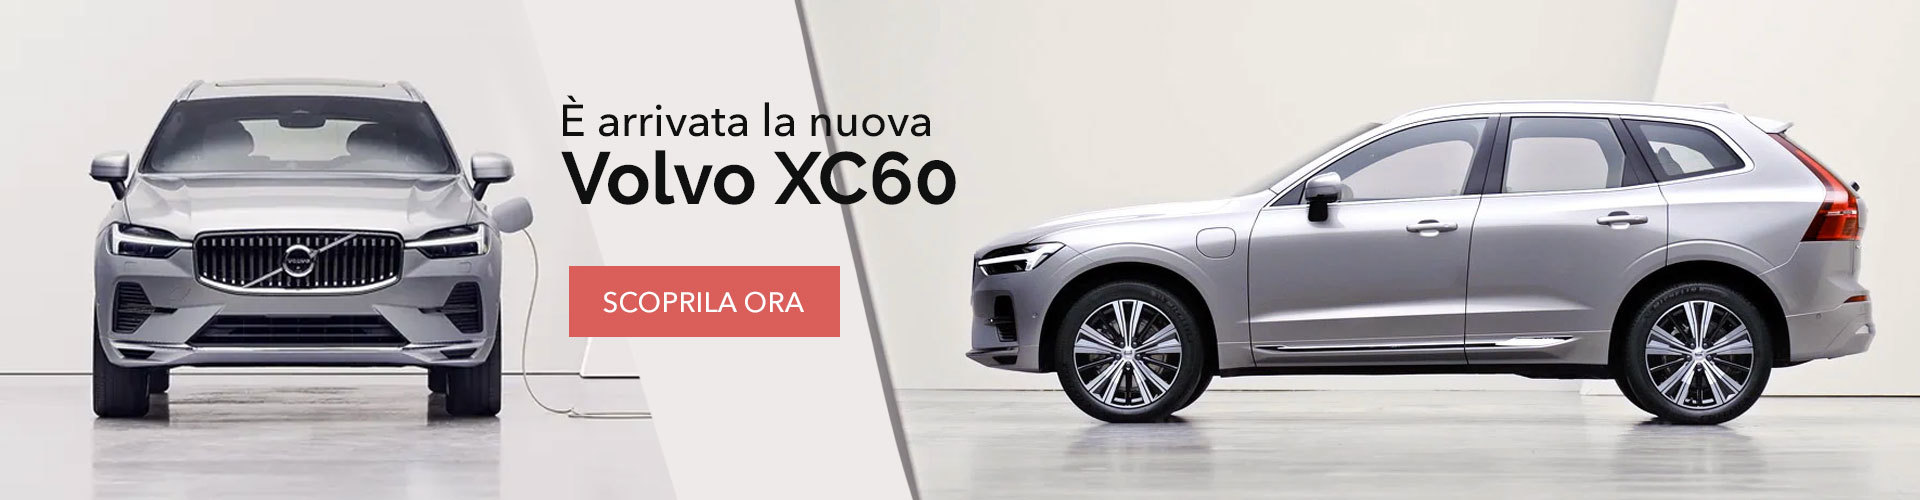 Volvo-XC60